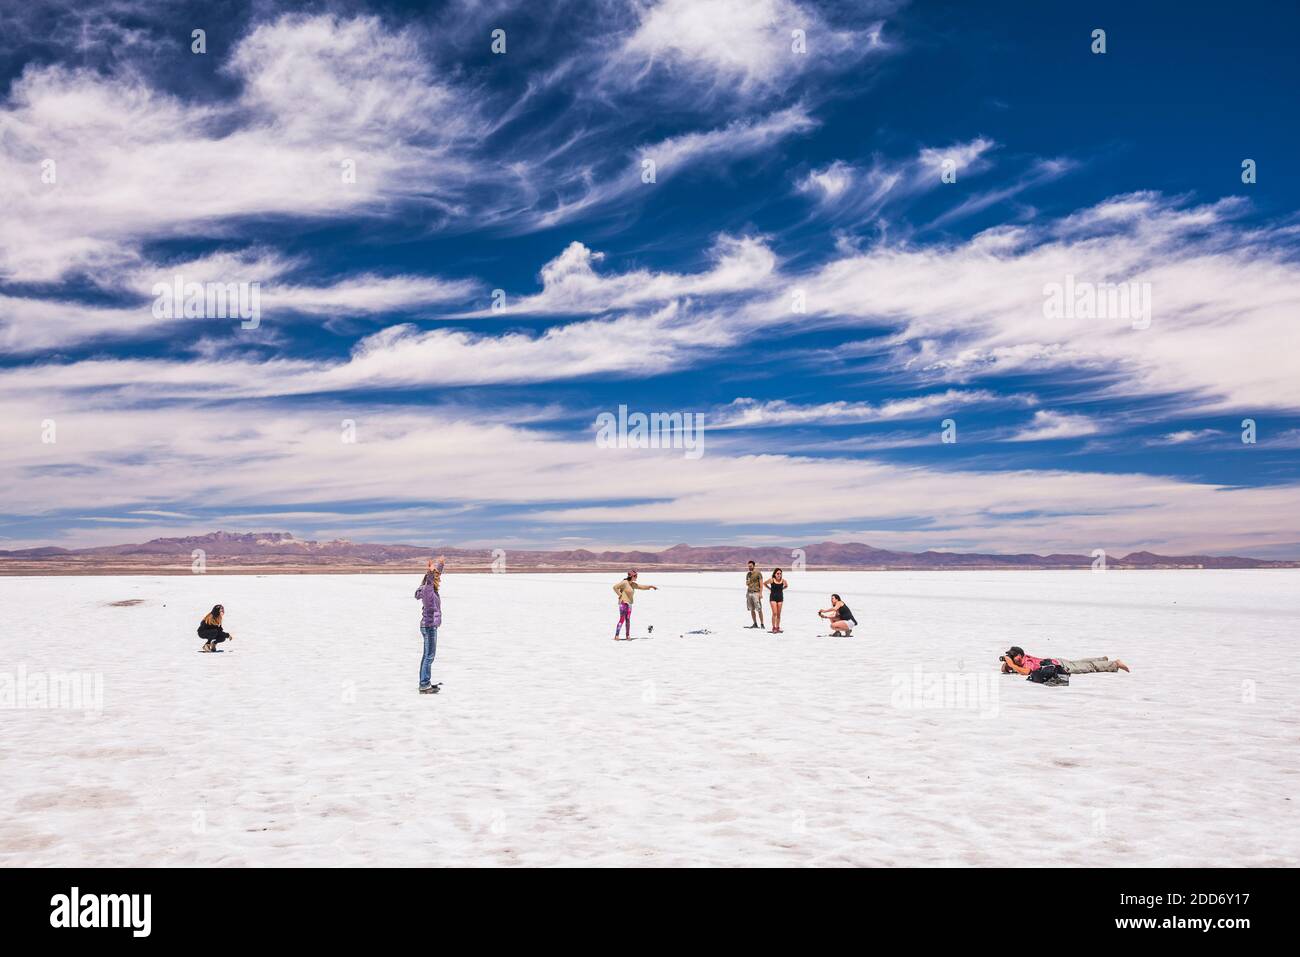 Taking perspective photos at Uyuni Salt Flats (Salar de Uyuni), Uyuni, Bolivia, South America Stock Photo